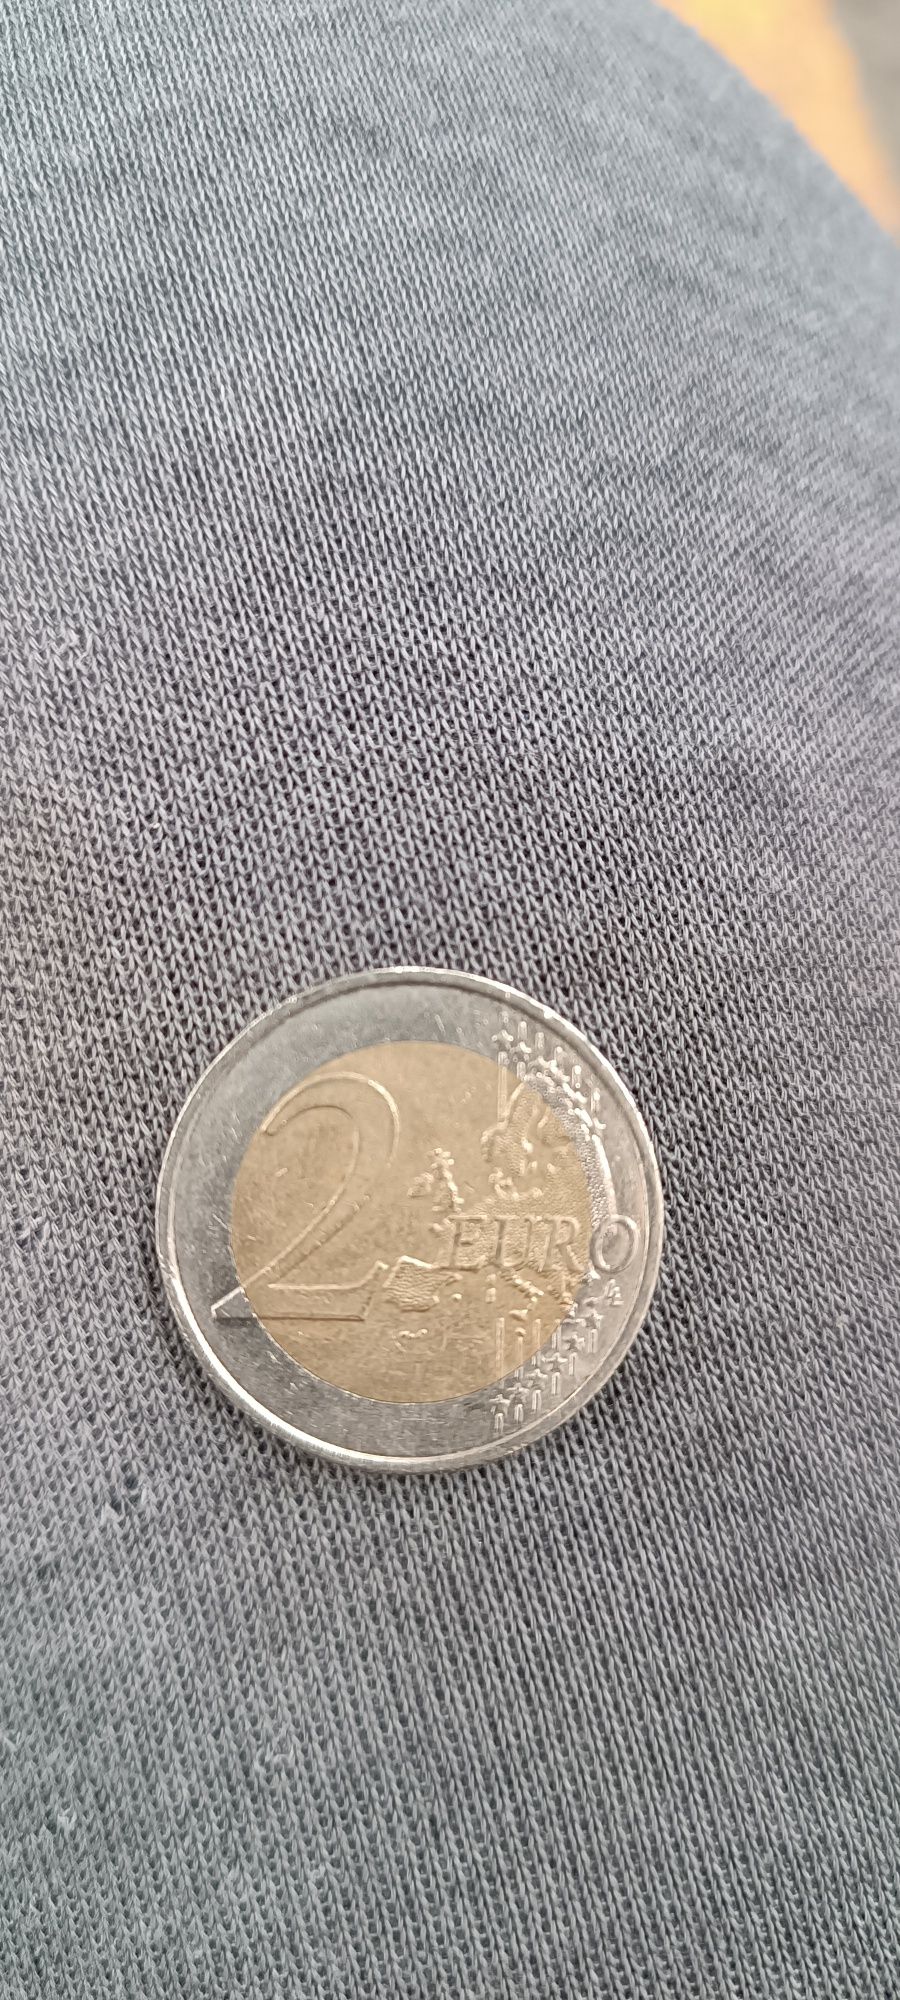 2 euros França com defeitos.